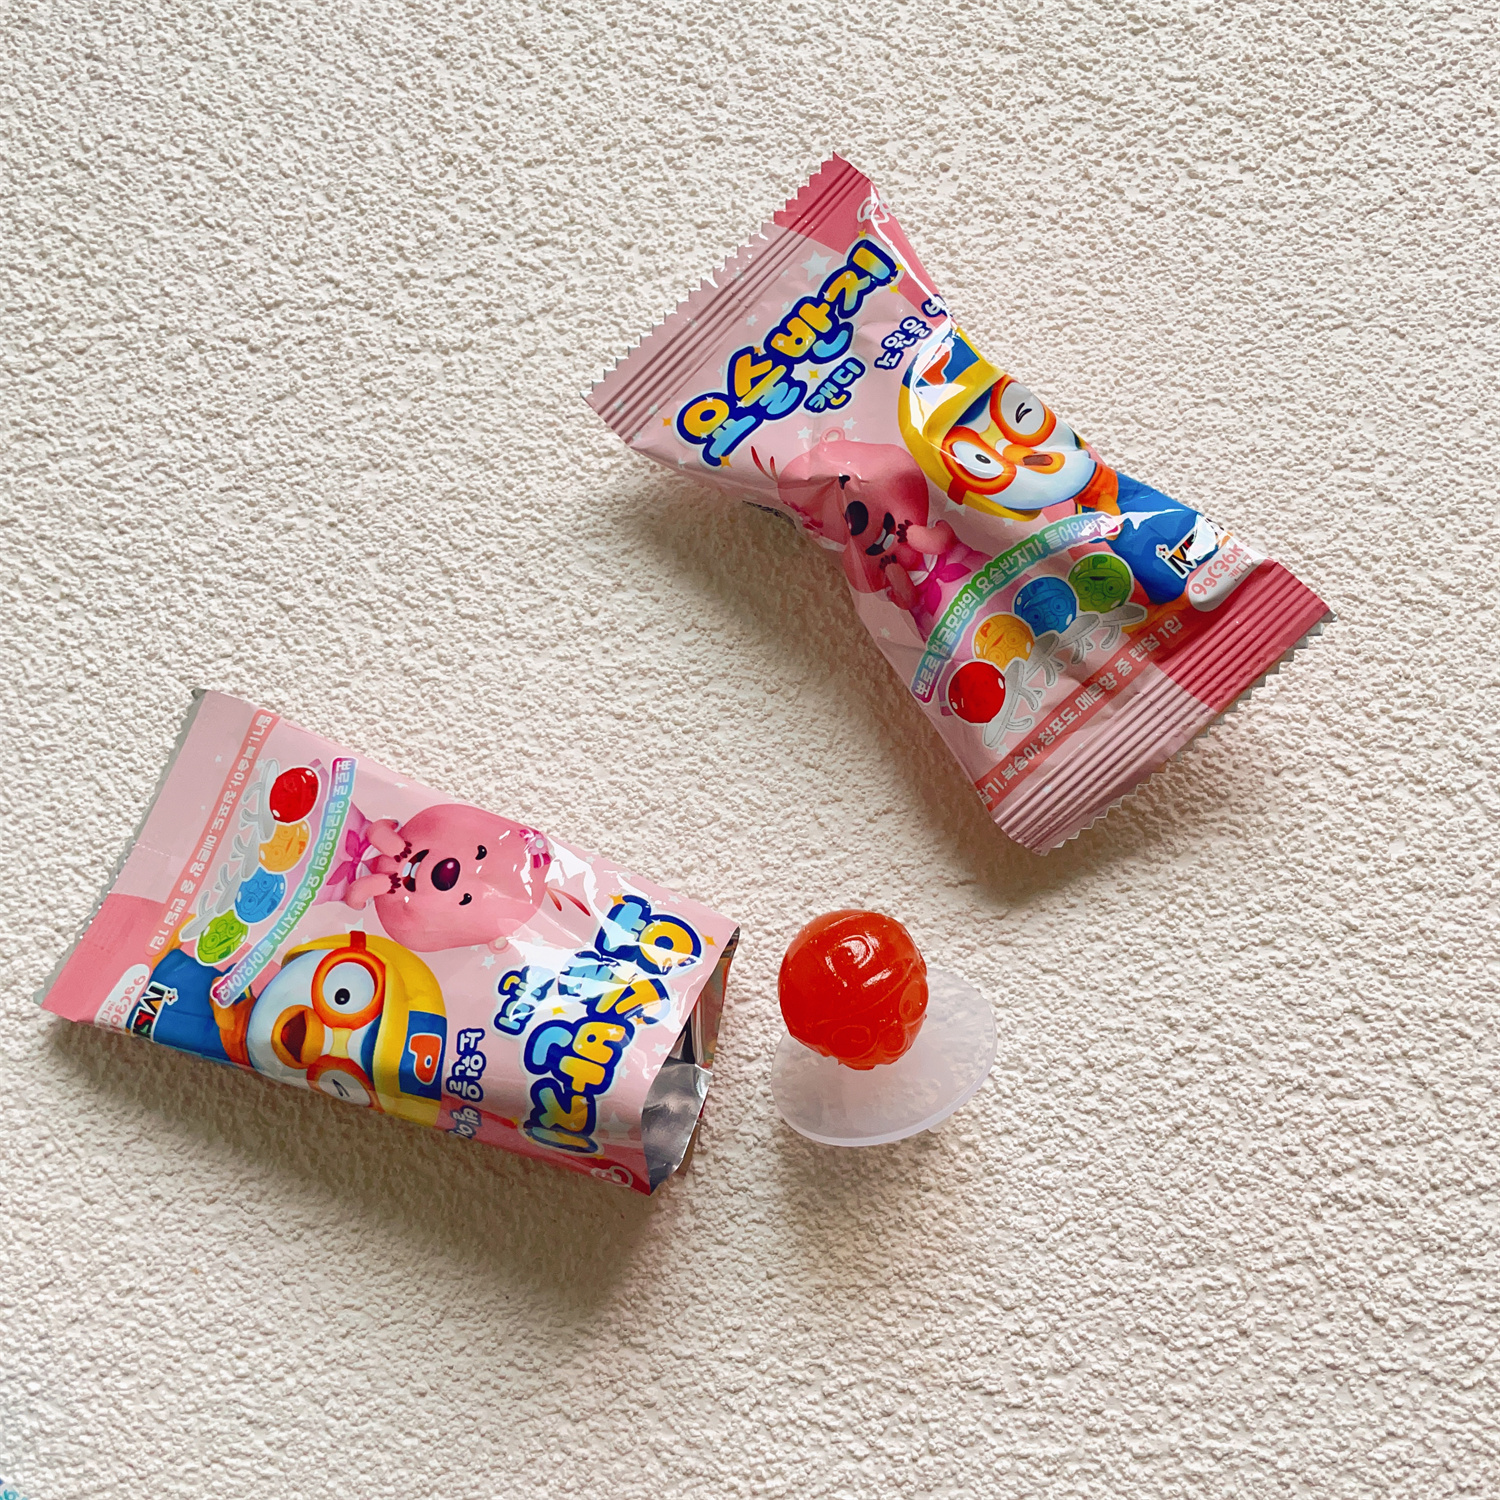 宝露露戒指糖啵乐乐 戒指形状糖果水蜜桃味儿童食玩 韩国进口零食